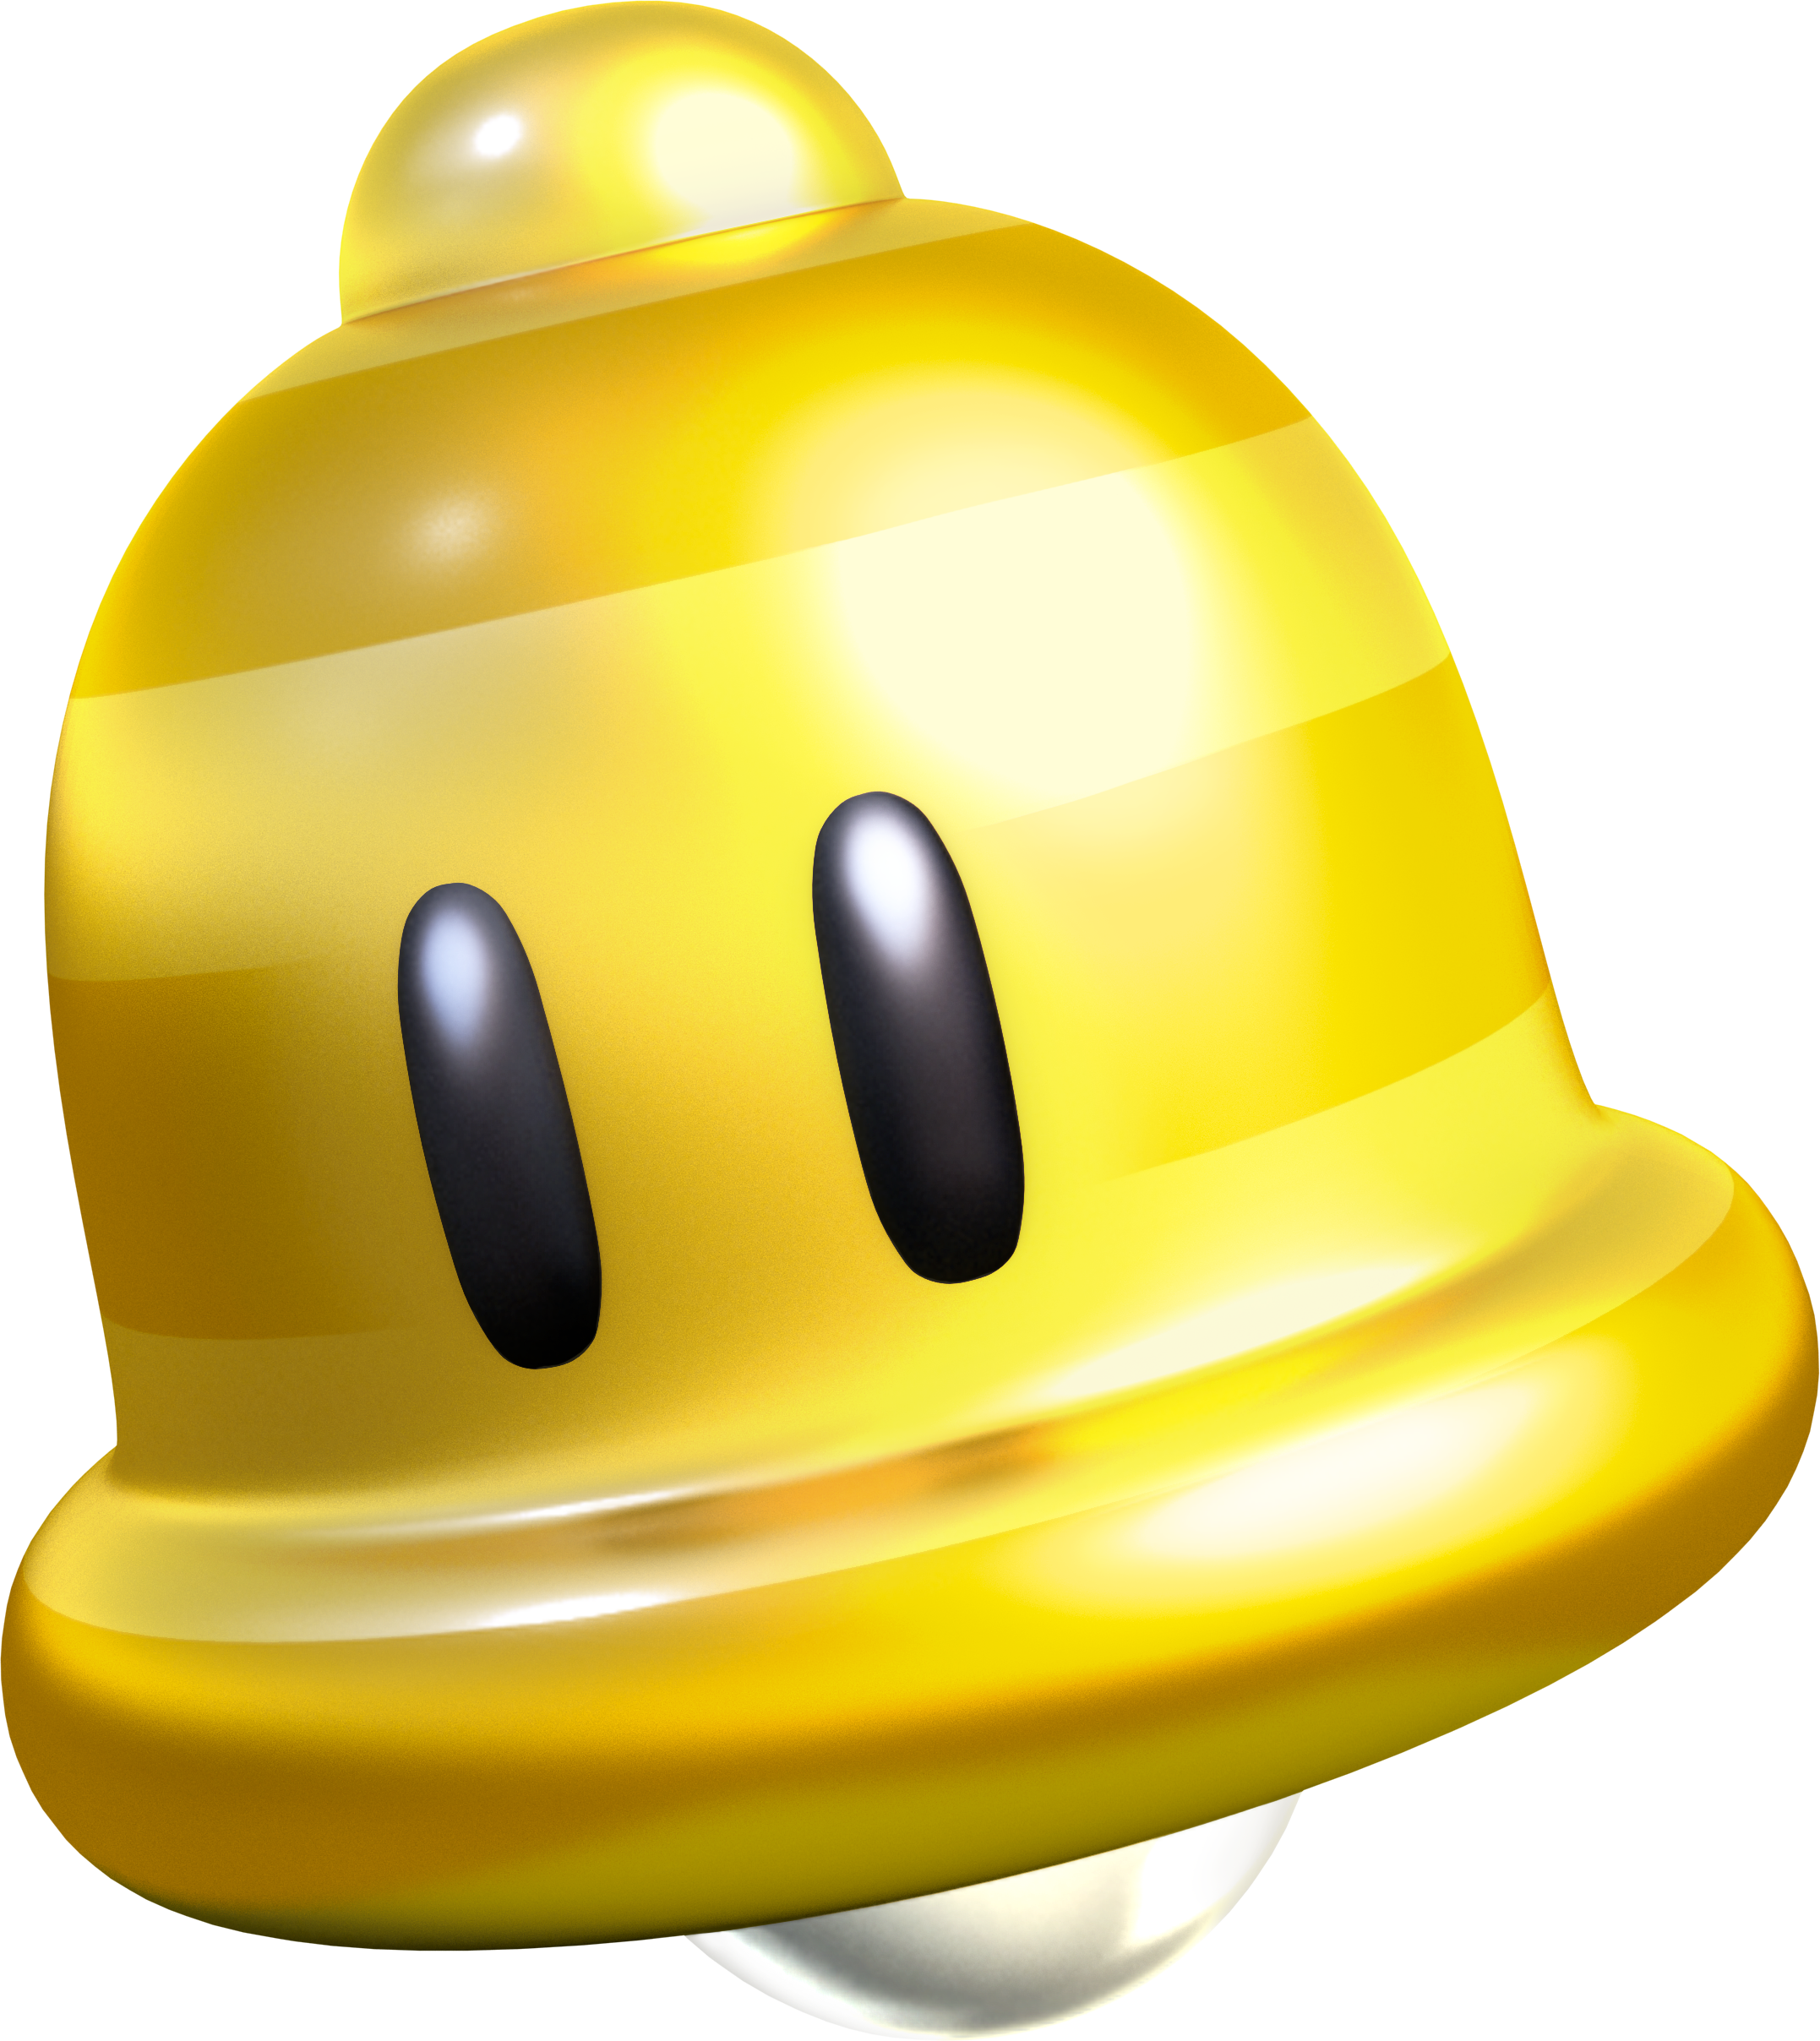 Super Bell - Super Mario 3d World Bell (2154x2416)